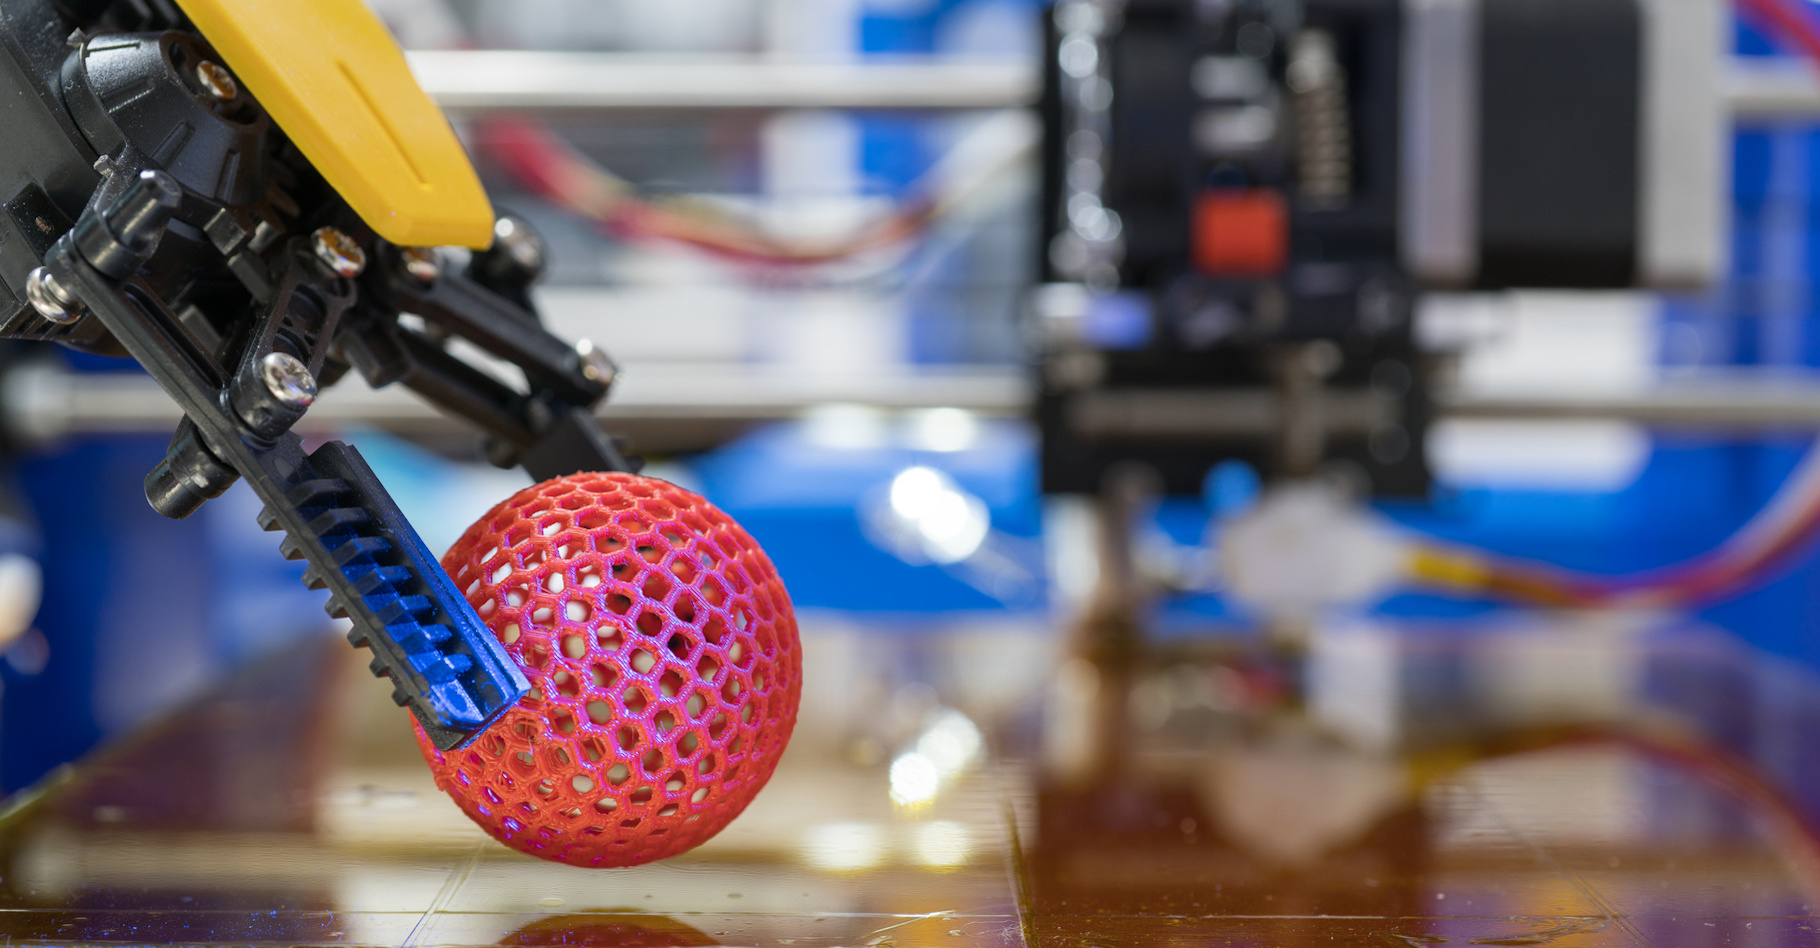 Les makers s'appuient notamment sur l'impression 3D et la fabrication additive. © science photo, Adobe Stock